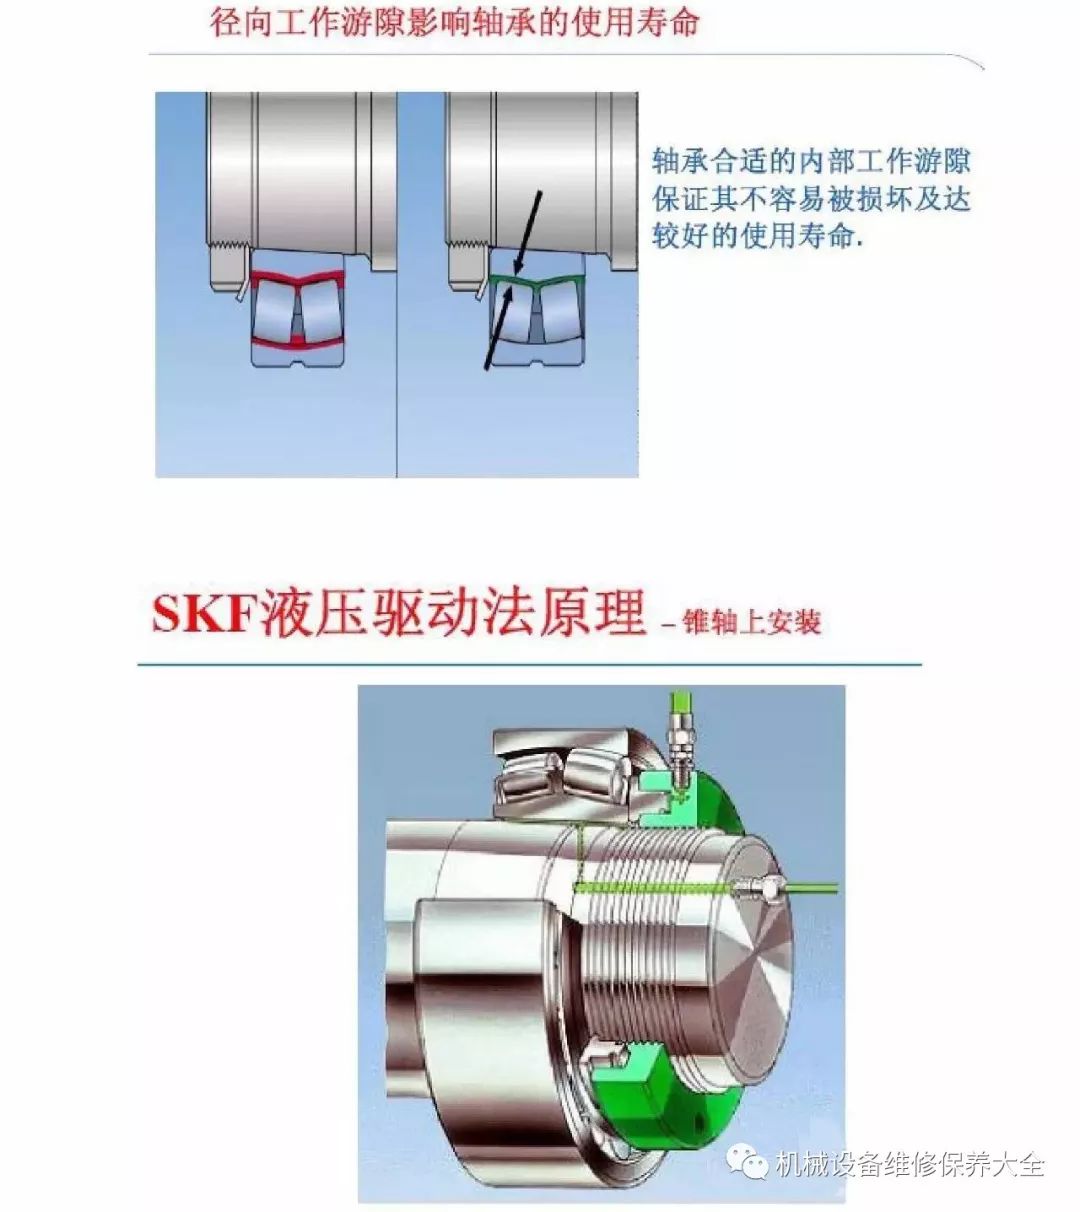 【恒力传动】各类轴承的拆卸与安装步骤详细图示(通用